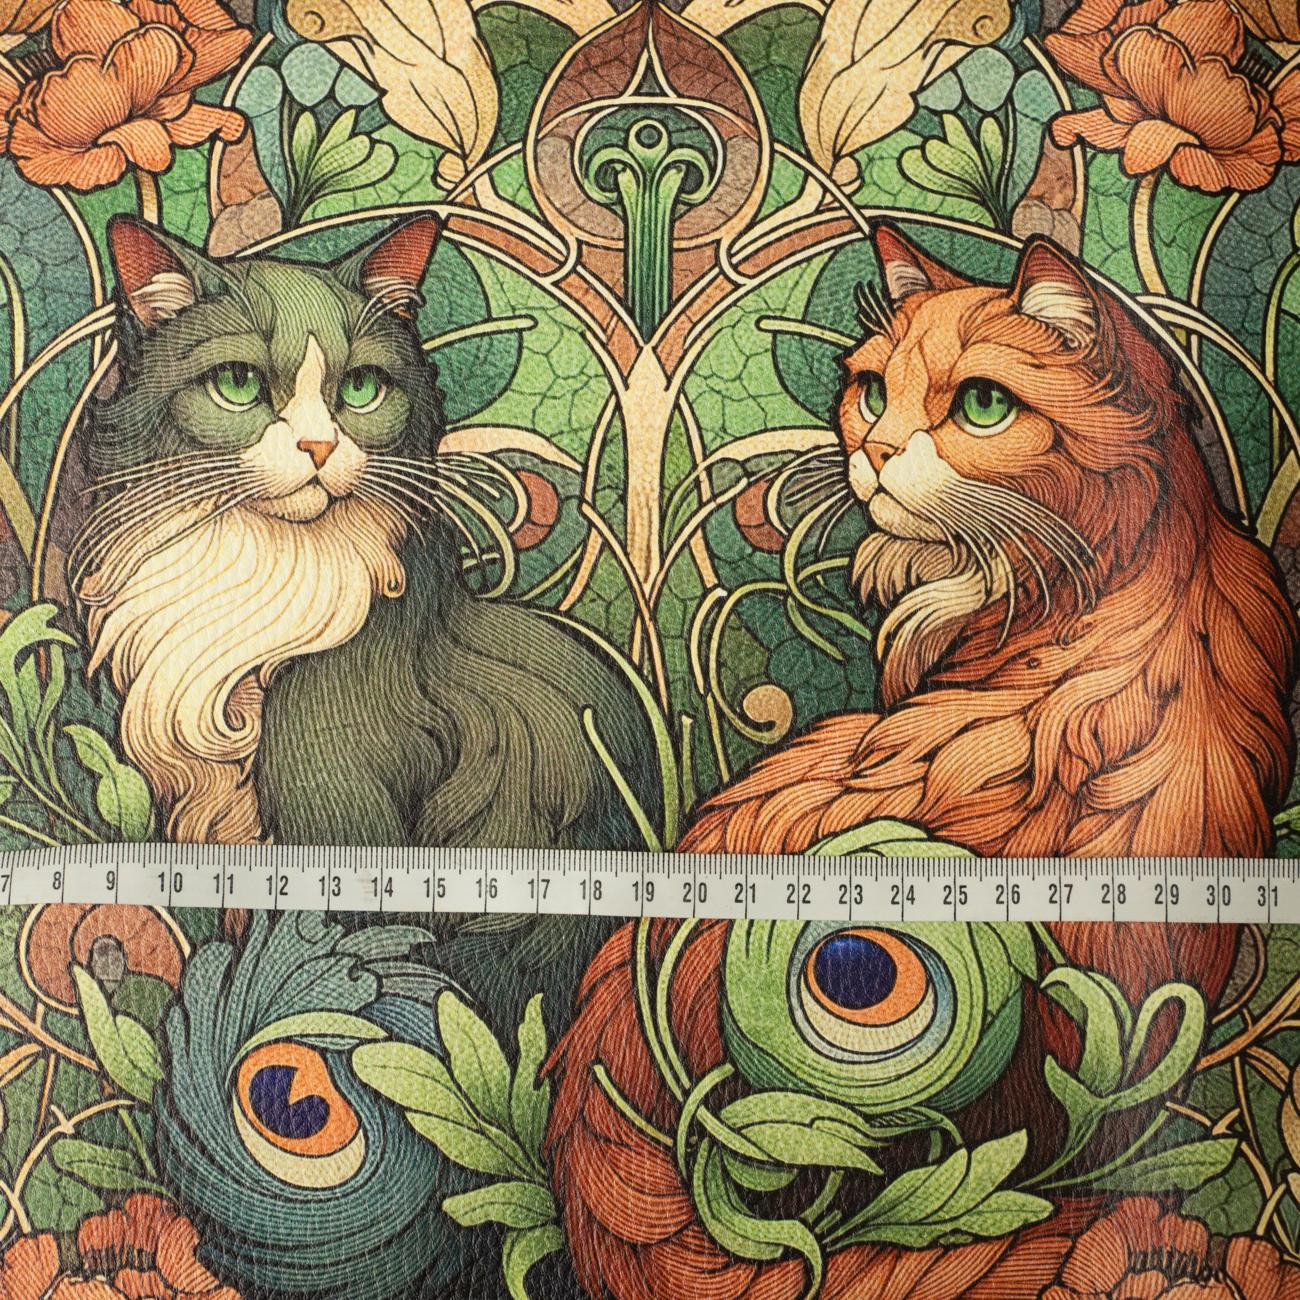 ART NOUVEAU CATS & FLOWERS PAT. 3 (46 cm x 50 cm) - thick pressed leatherette